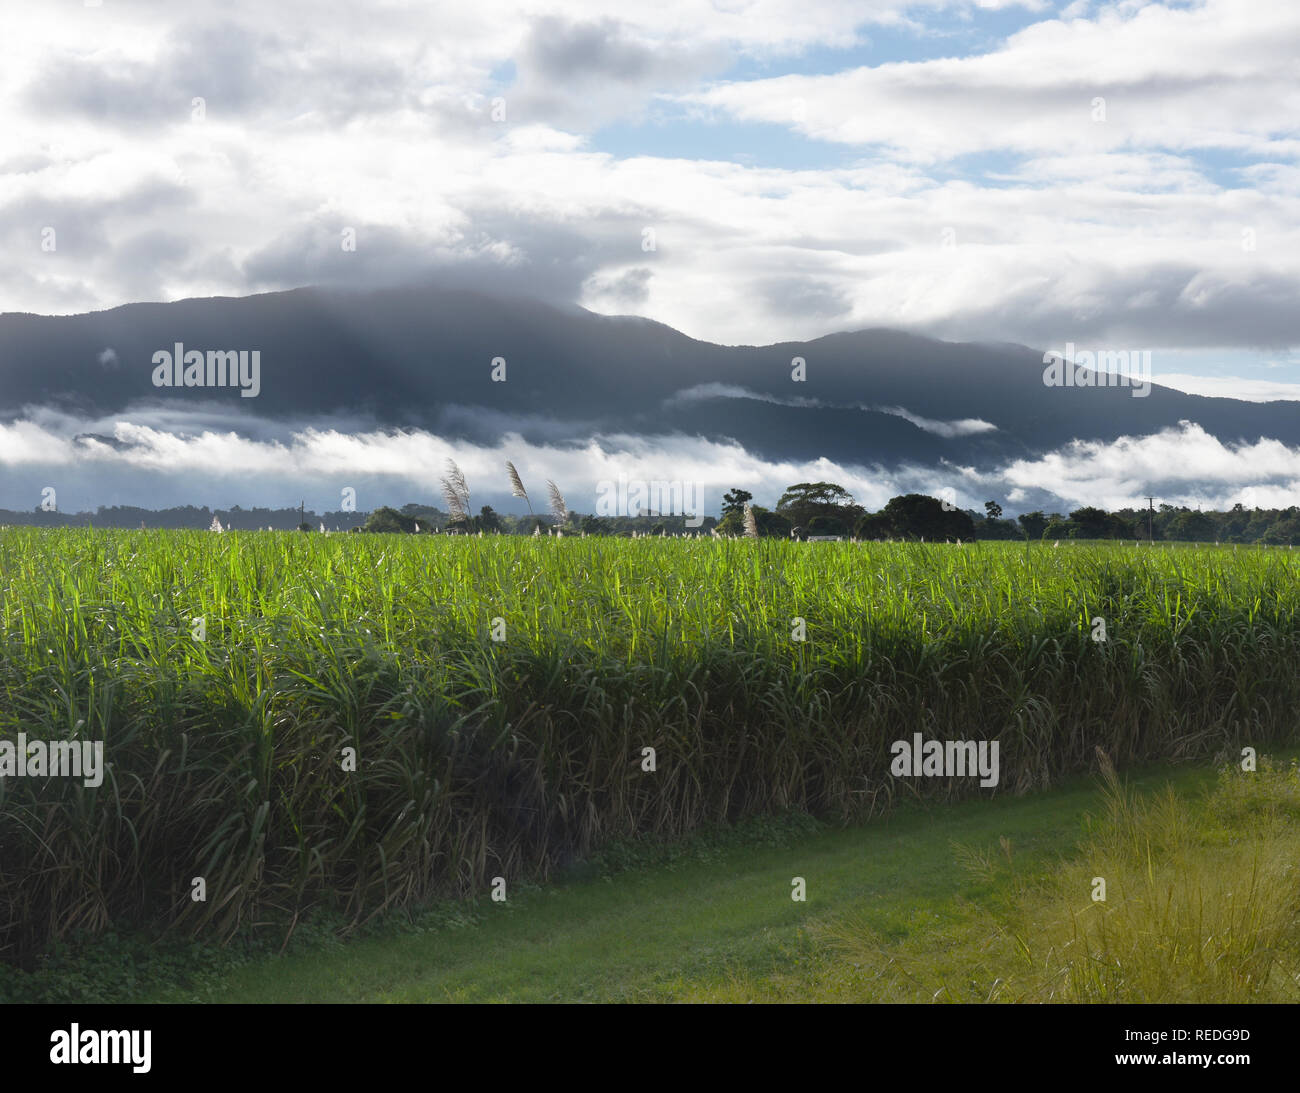 Cane field, Far North Queensland, Australia Stock Photo